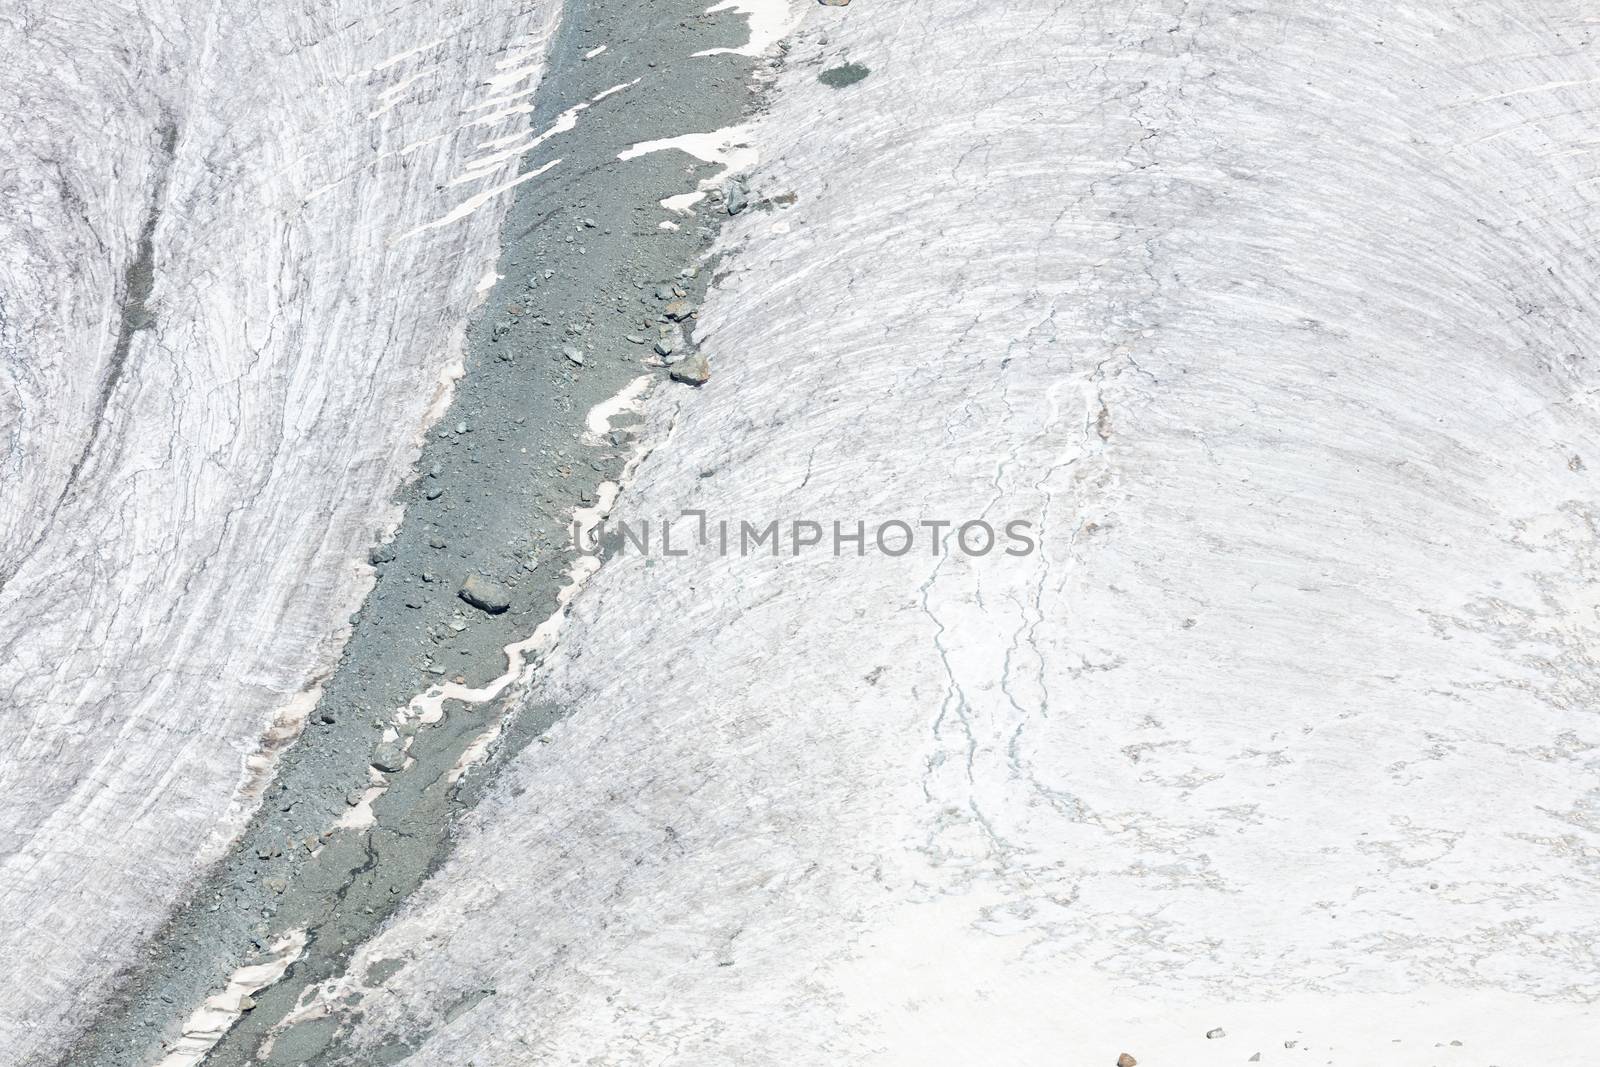 Closeup of a glacier by michaklootwijk